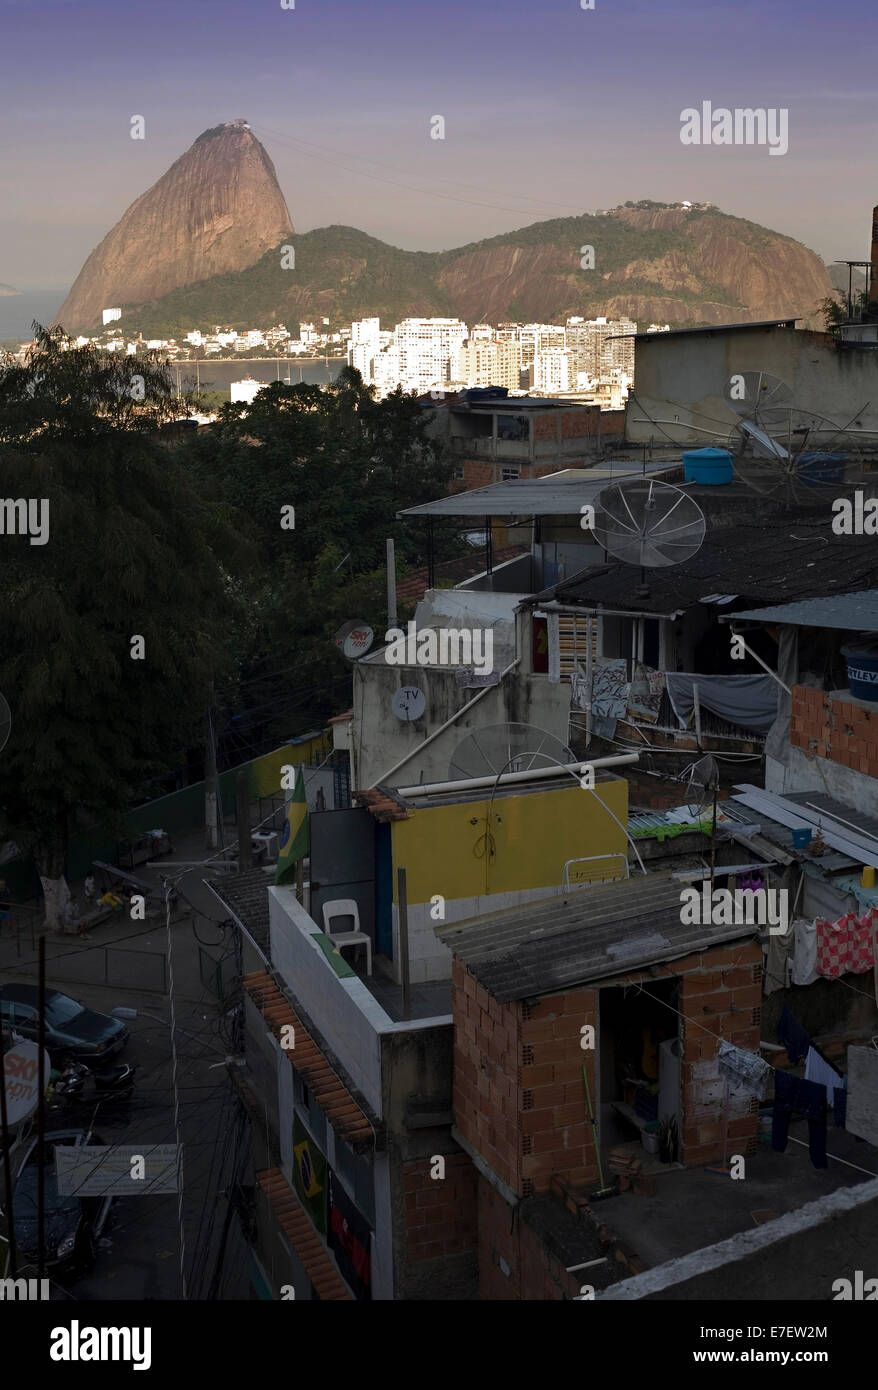 Vue sur le pain de sucre de l'intérieur de la favela de tabares bastos à Rio de Janeiro. Brésil. Banque D'Images